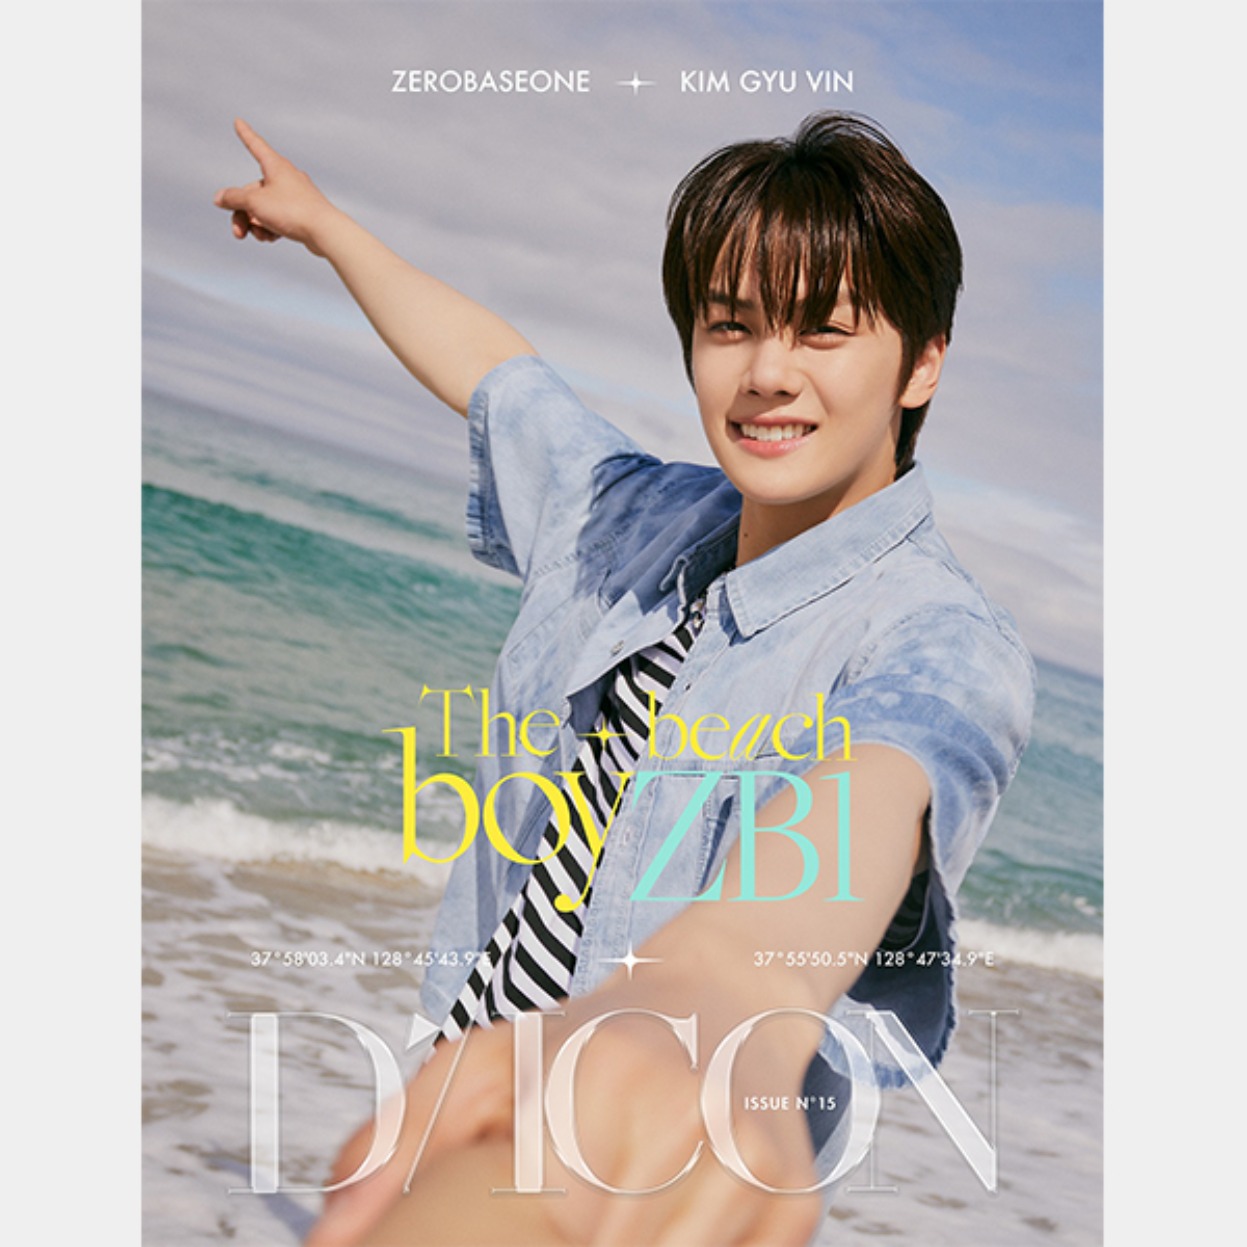 DICON VOLUME N°15 ZEROBASEONE : The beach boyZB1 _ 07 KIM GYU VIN